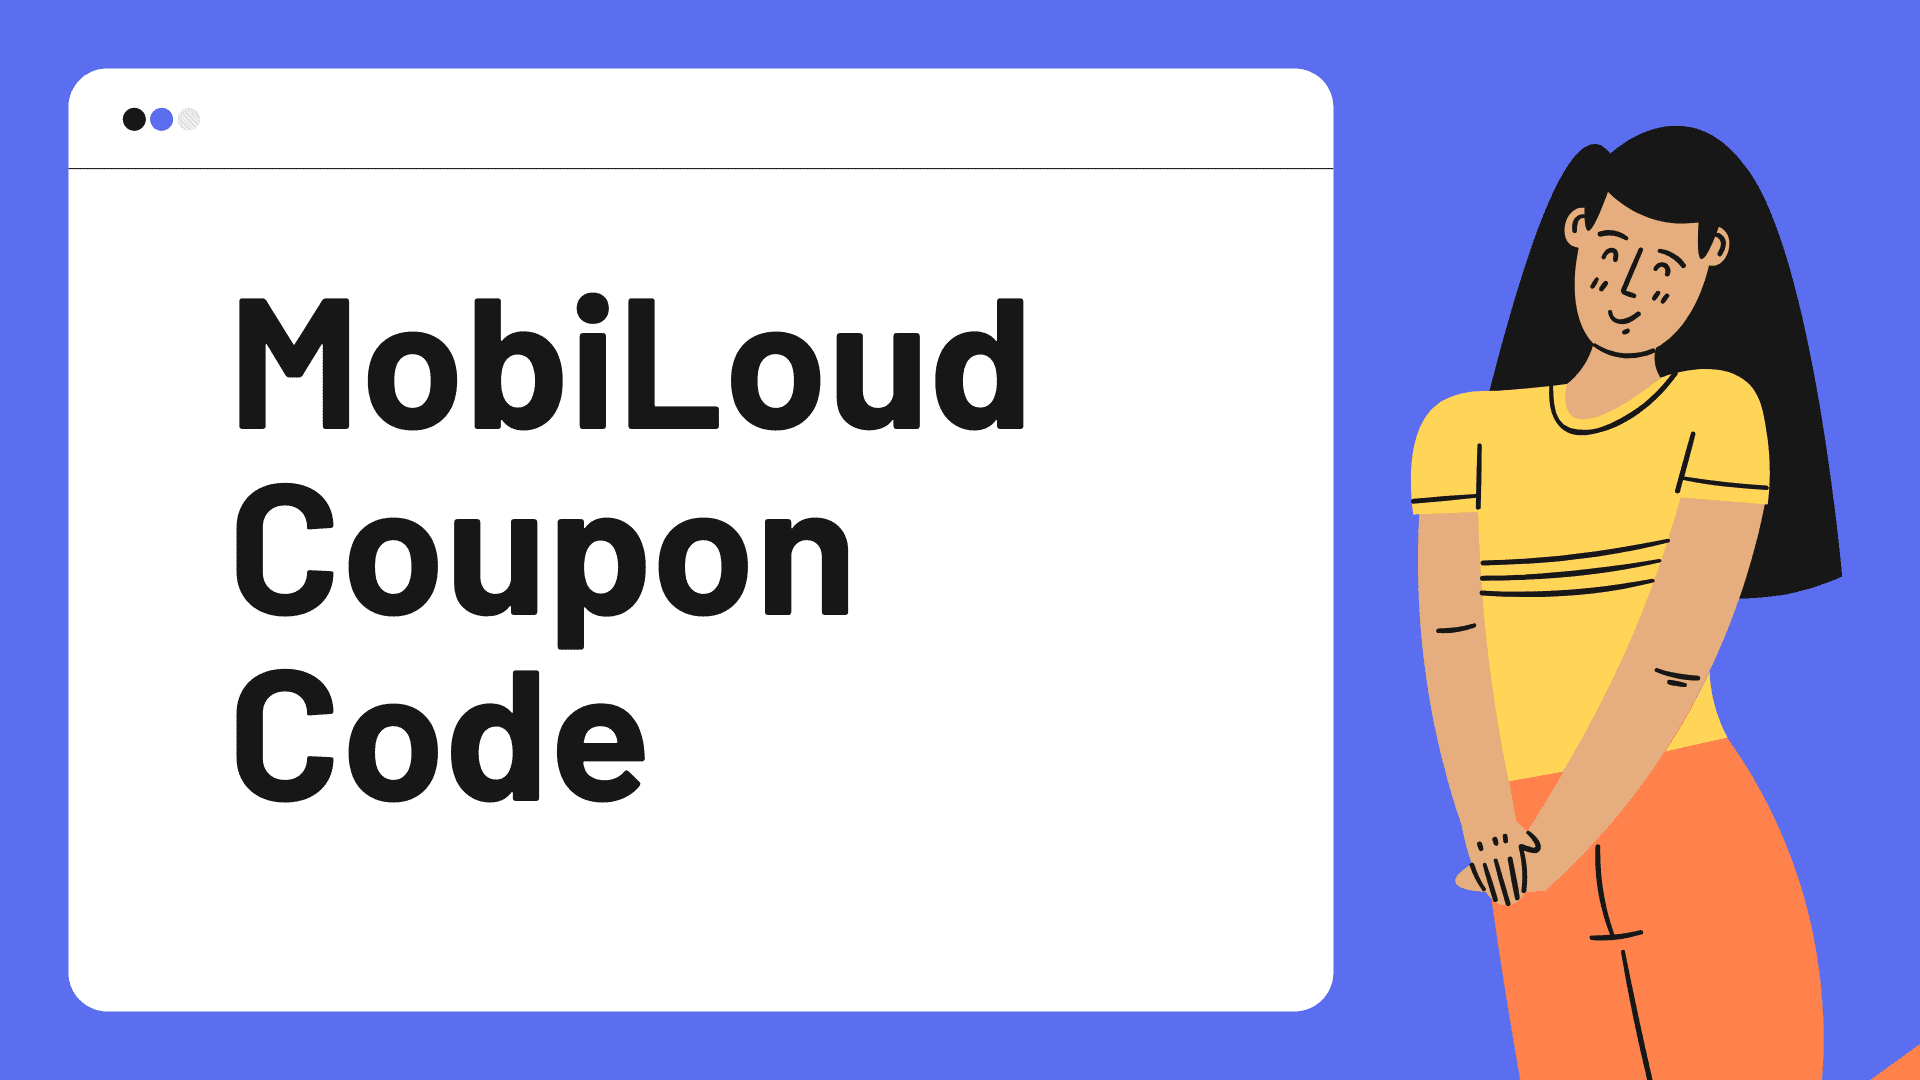 MobiLoud coupon Code